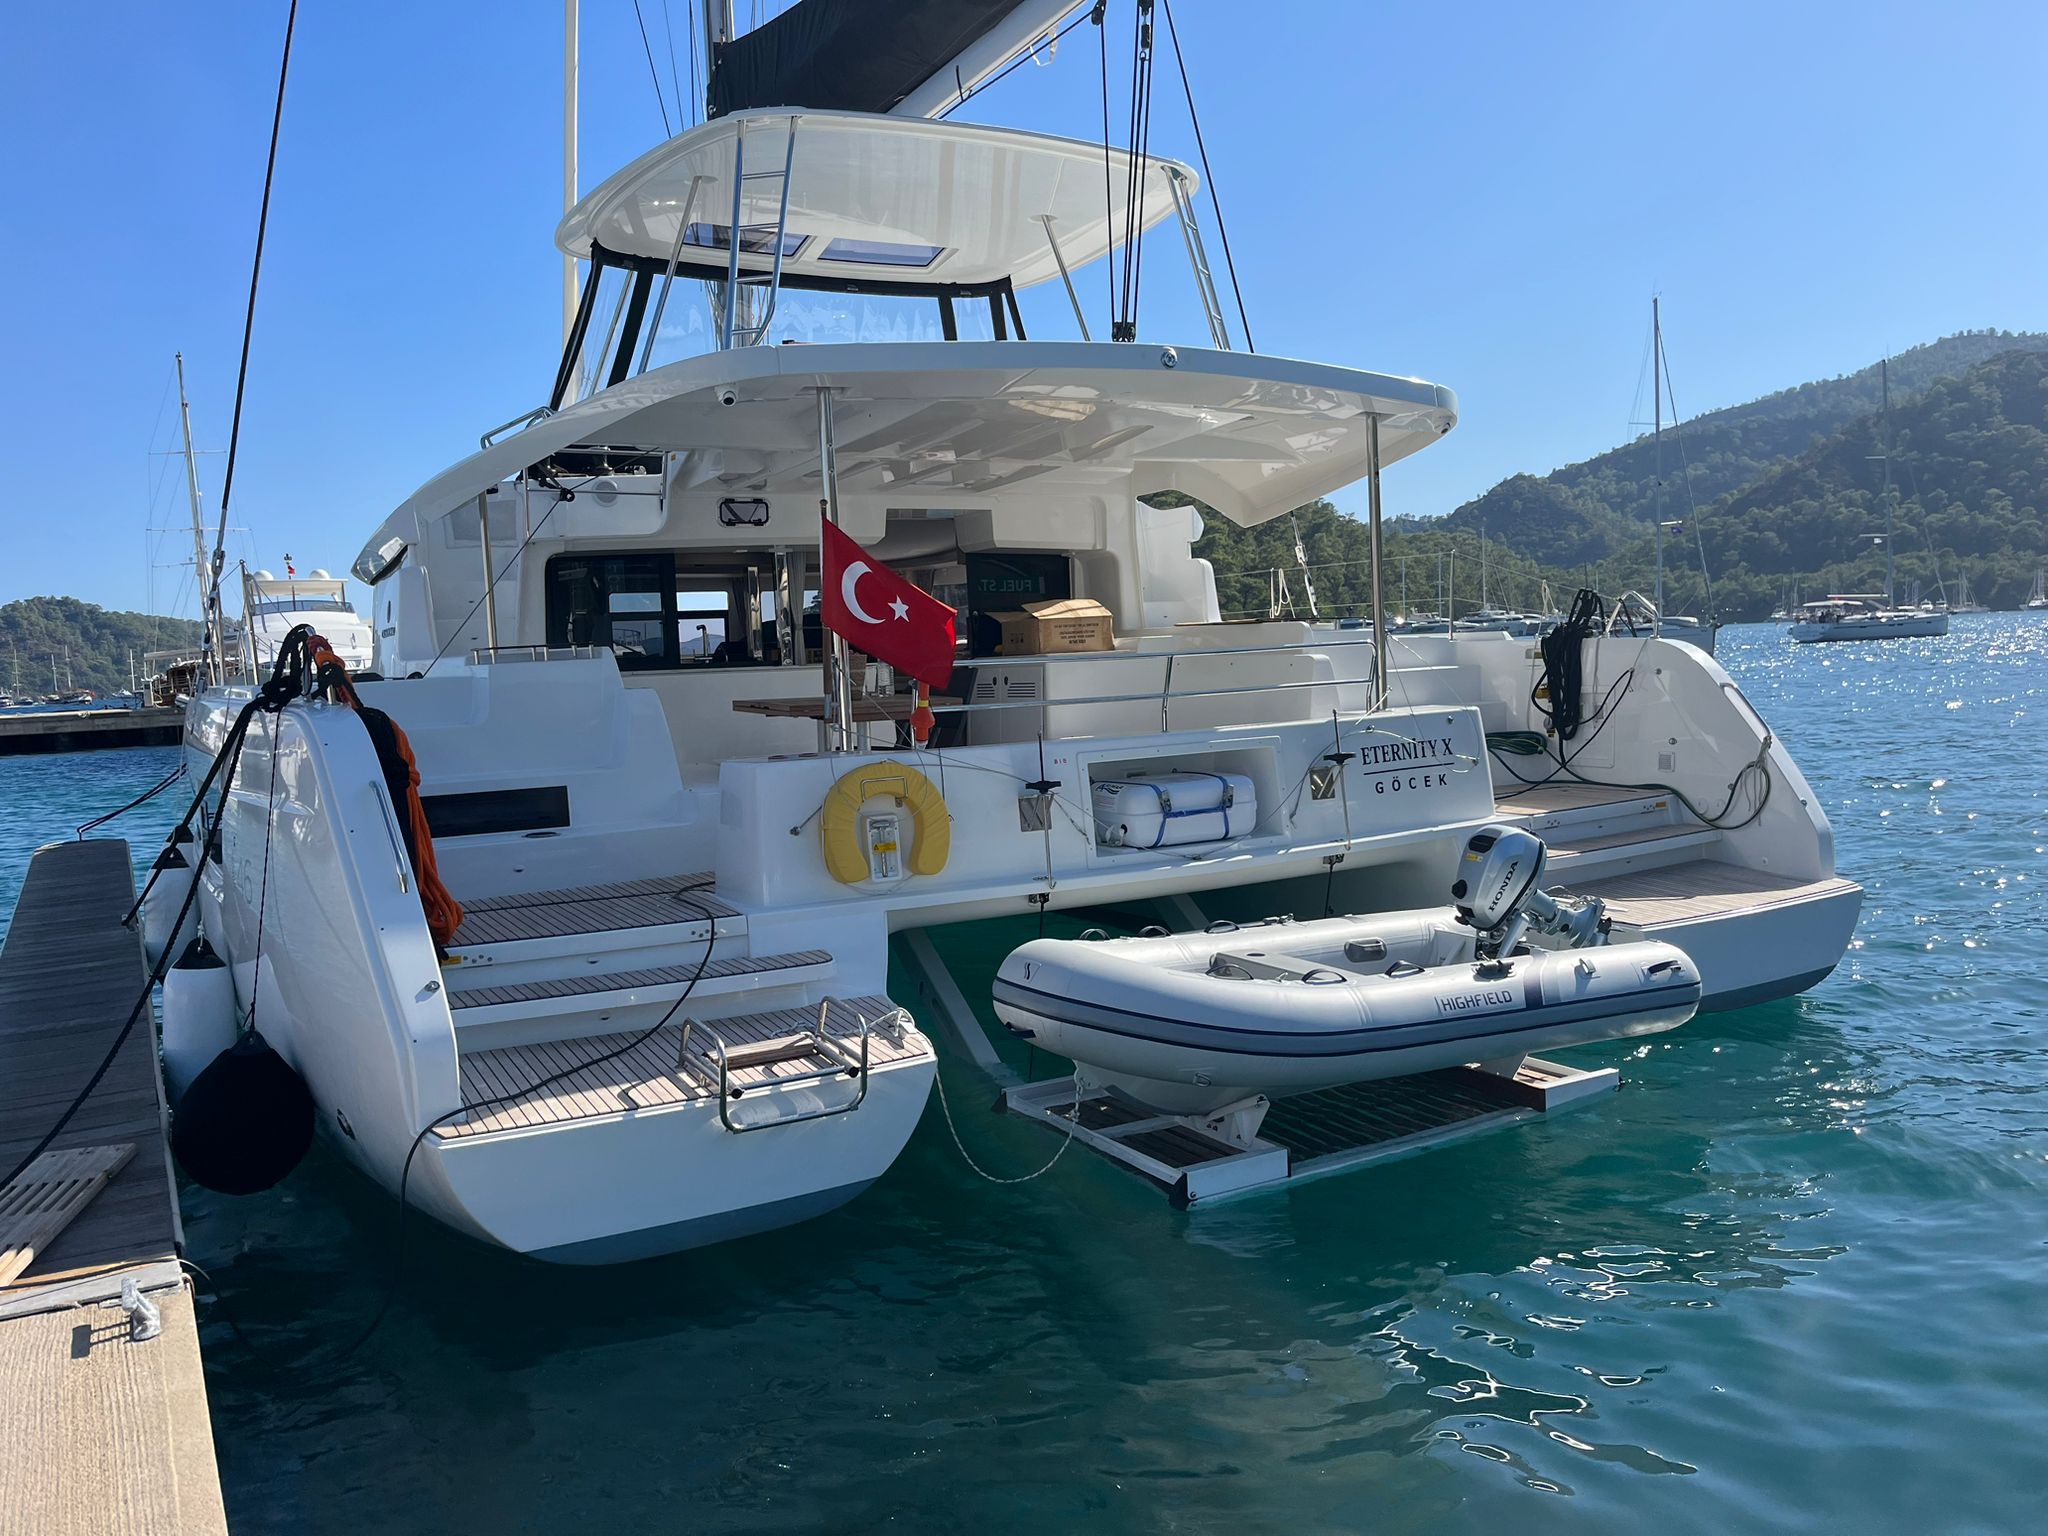 Lagoon 46  - Catamaran charter Göcek & Boat hire in Turkey Turkish Riviera Lycian coast Göcek Marinturk Village Port 2